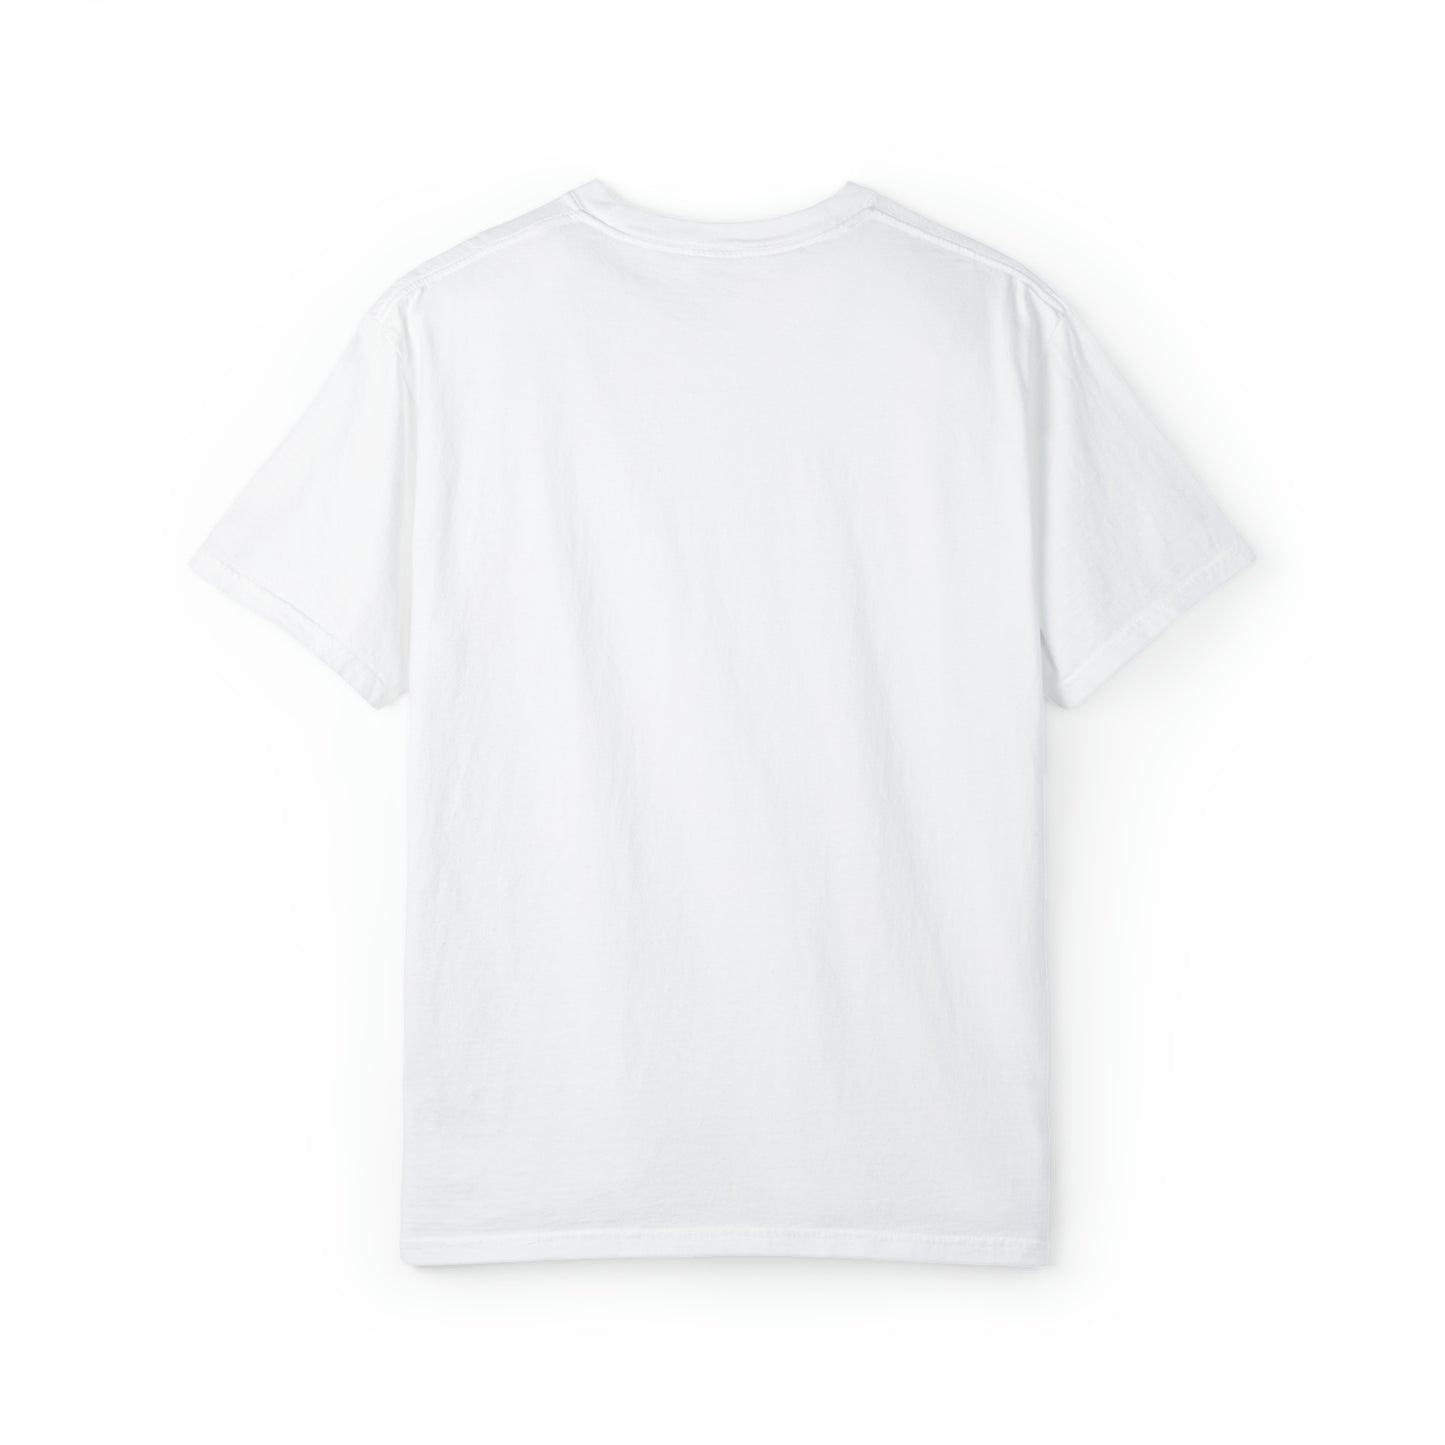 'Détroit Rocque Cité' T-Shirt | Unisex Garment-Dyed